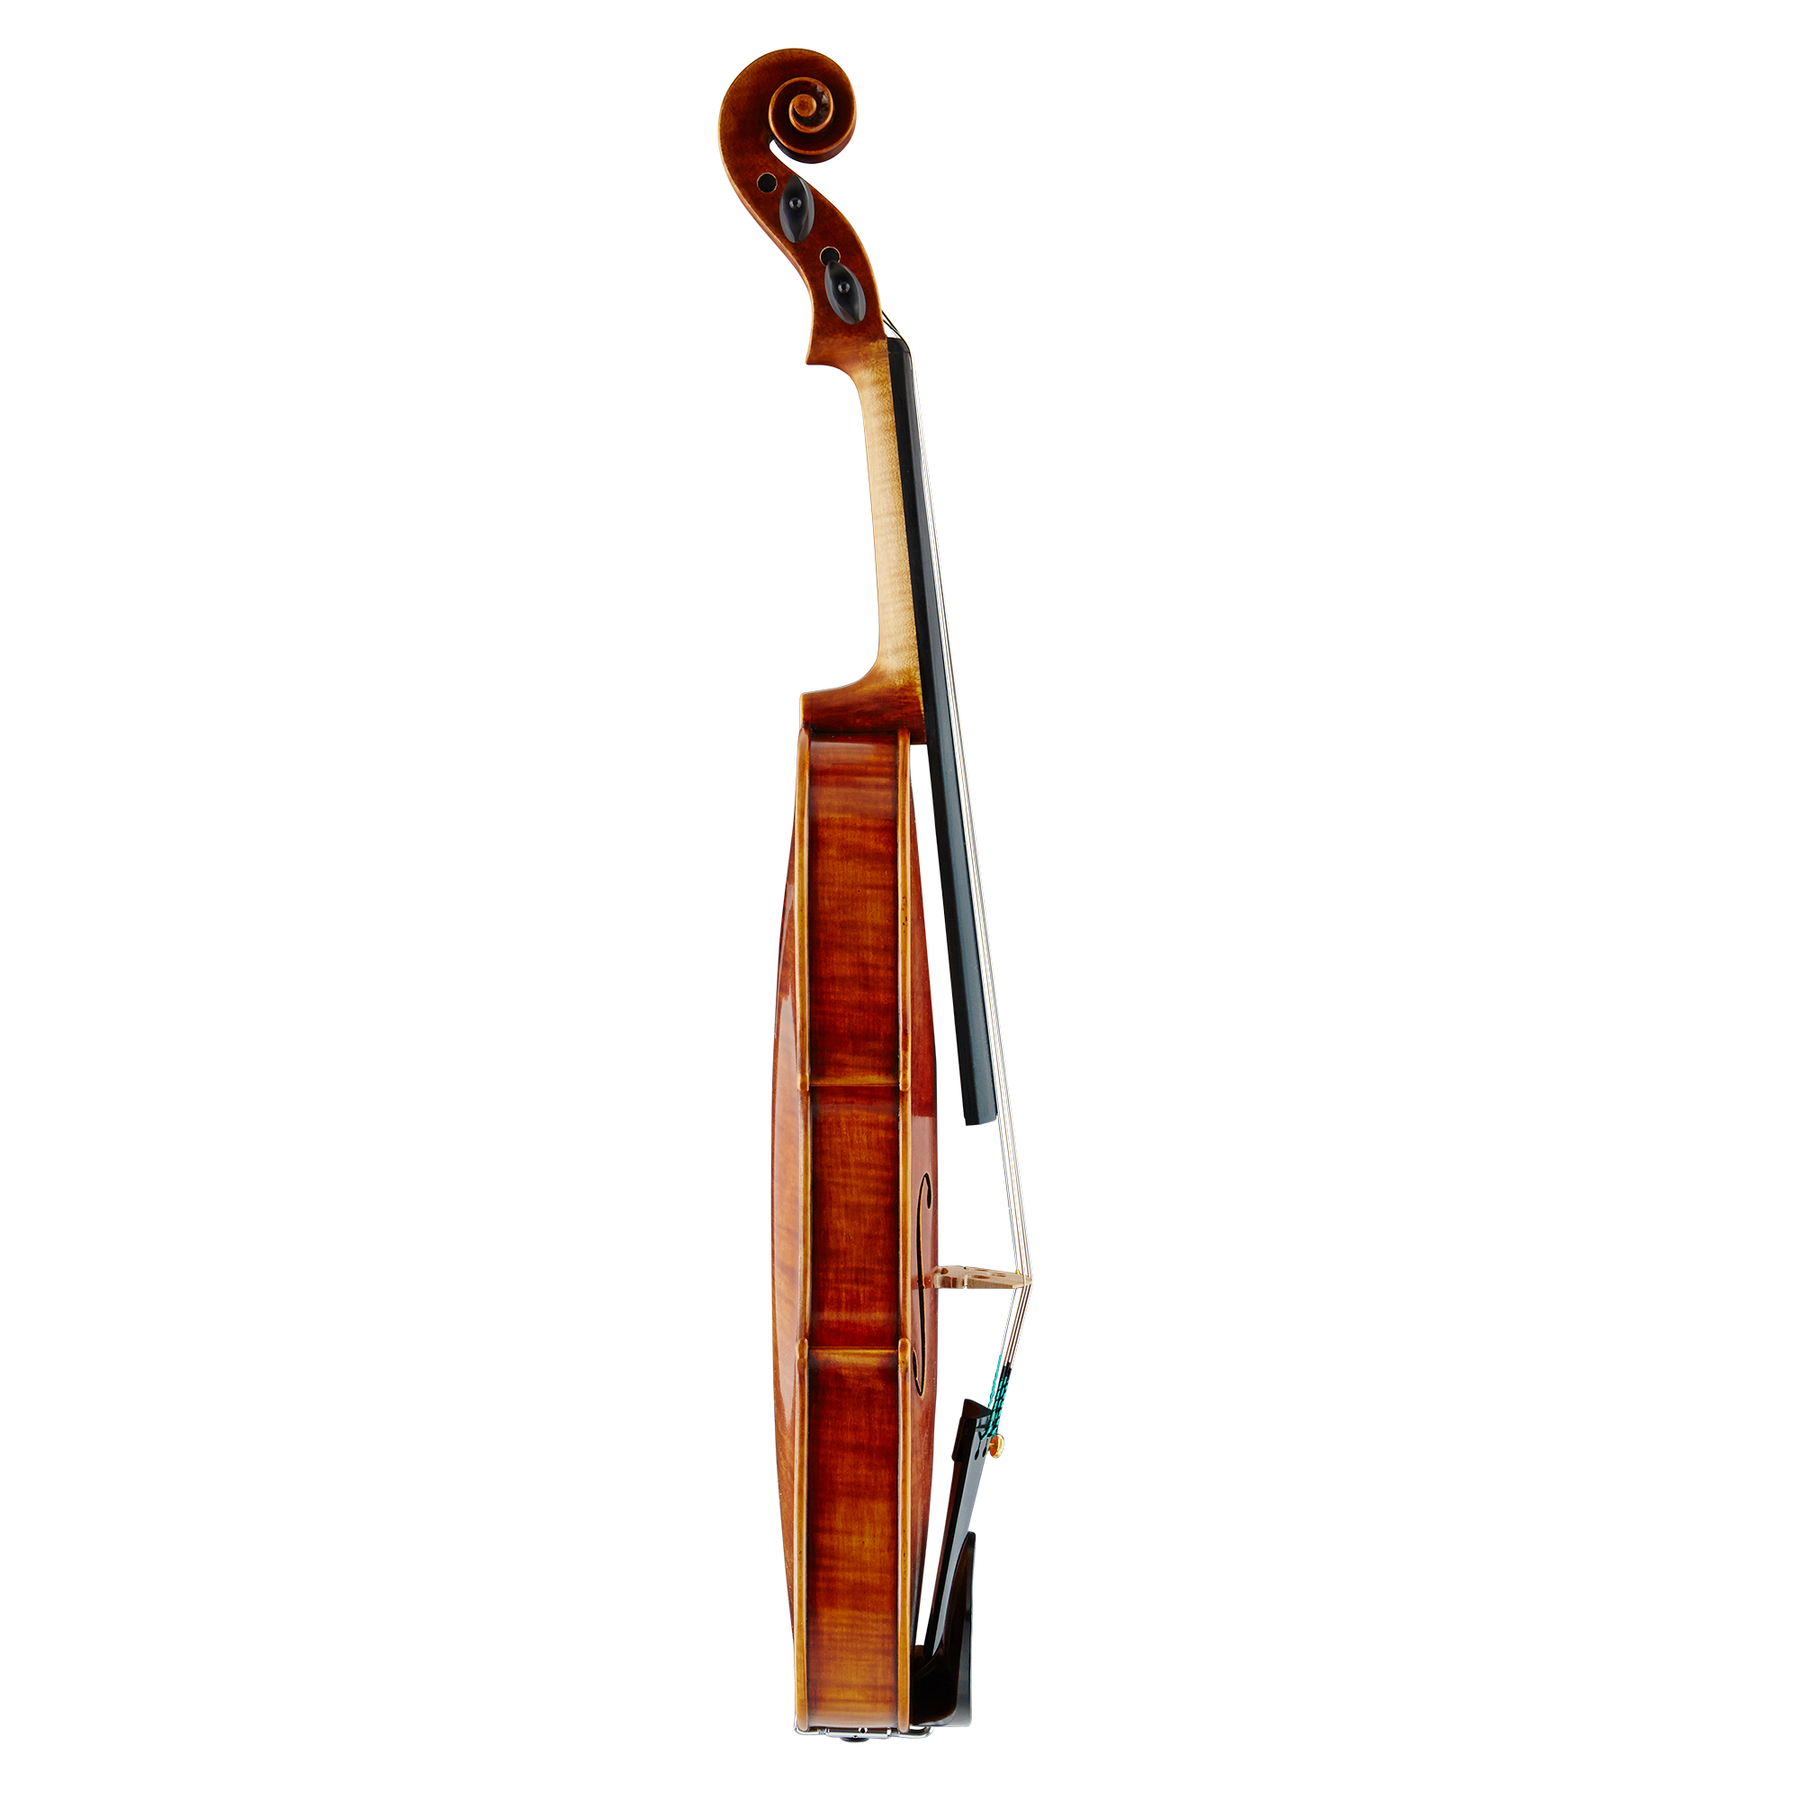 Nicolo Gabrieli 85F Grand Master Violin